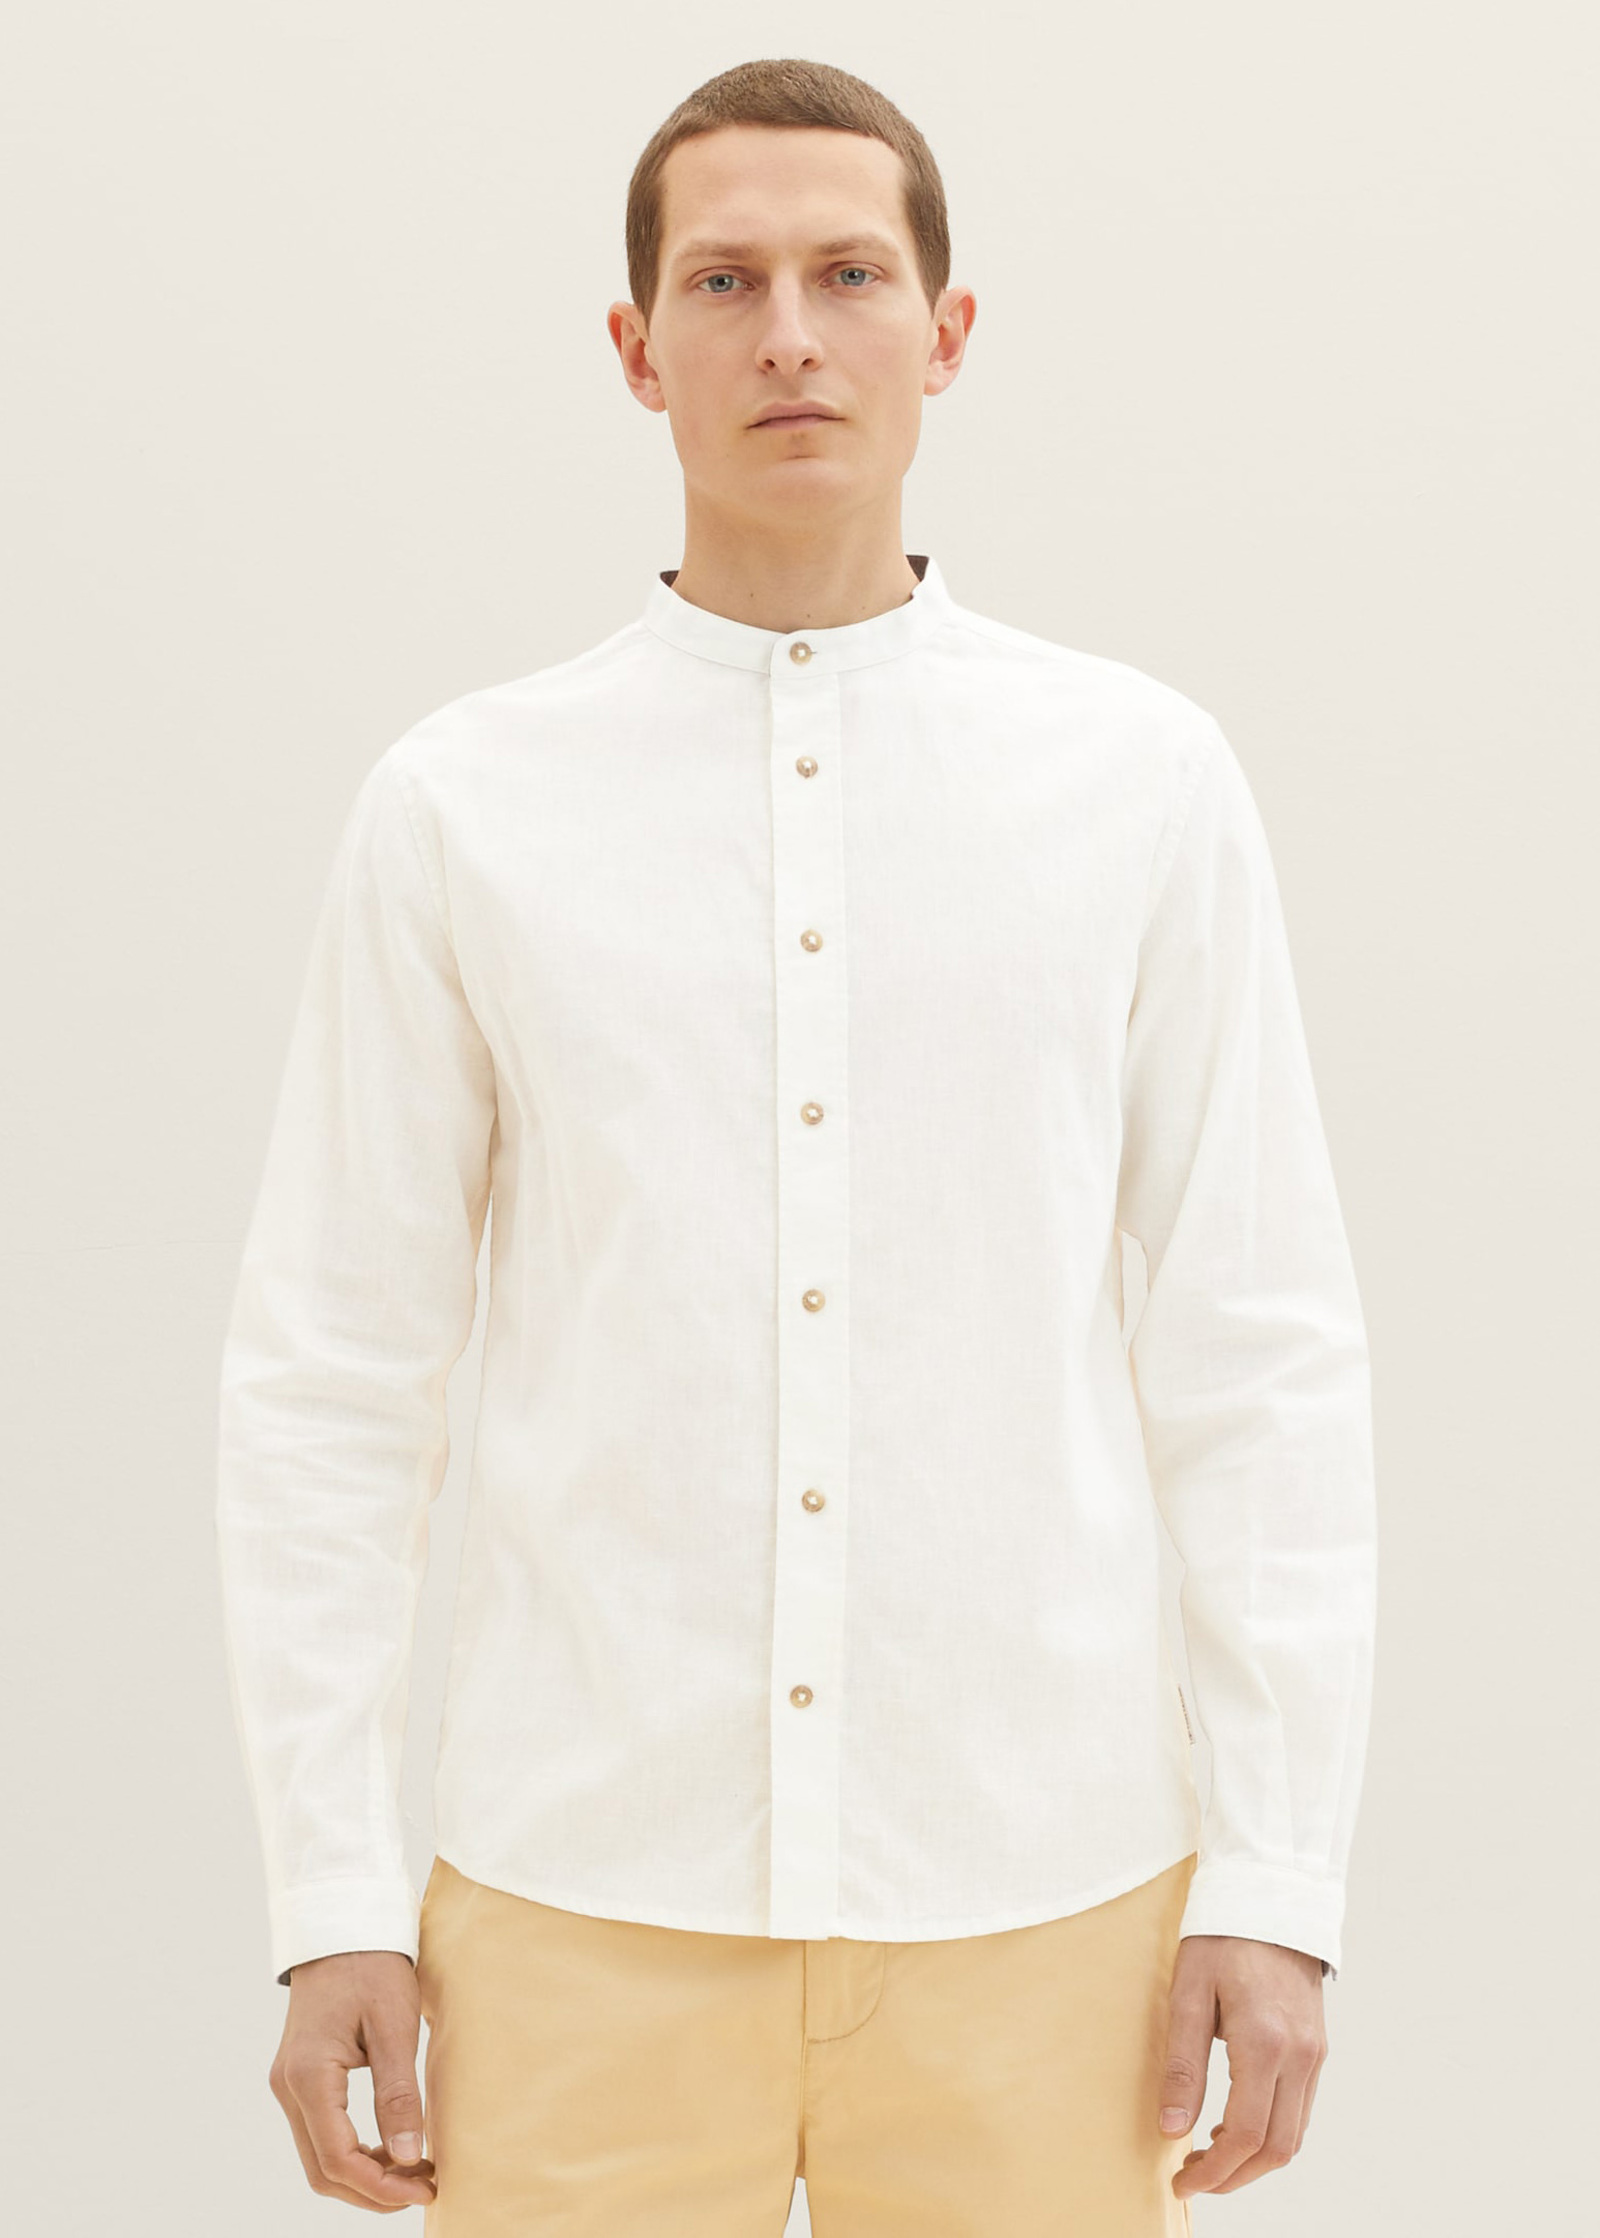 Tom Tailor Shirt Off White - 1034903-10332